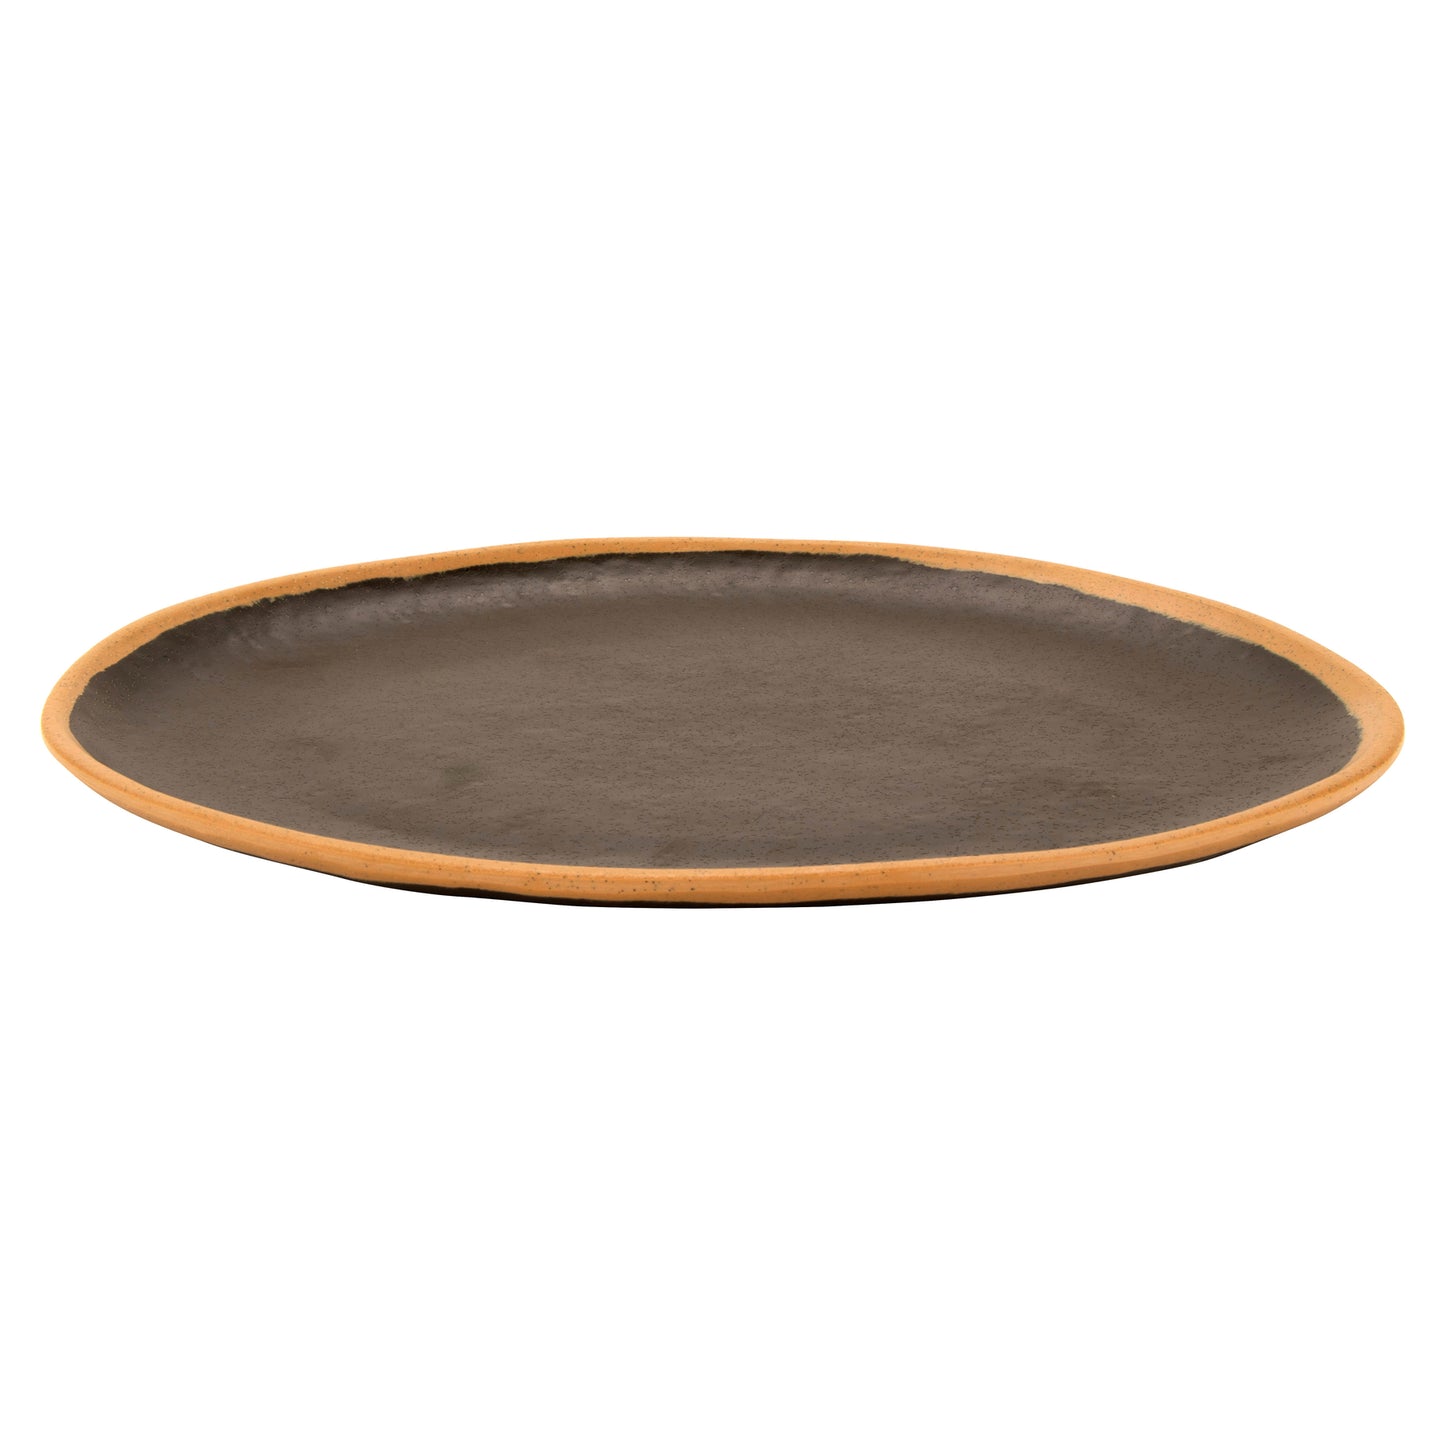 11.75" x 9.25" Brown, Melamine, Oval Dinner Platter, G.E.T. Pottery Market Glazed (12 Pack)